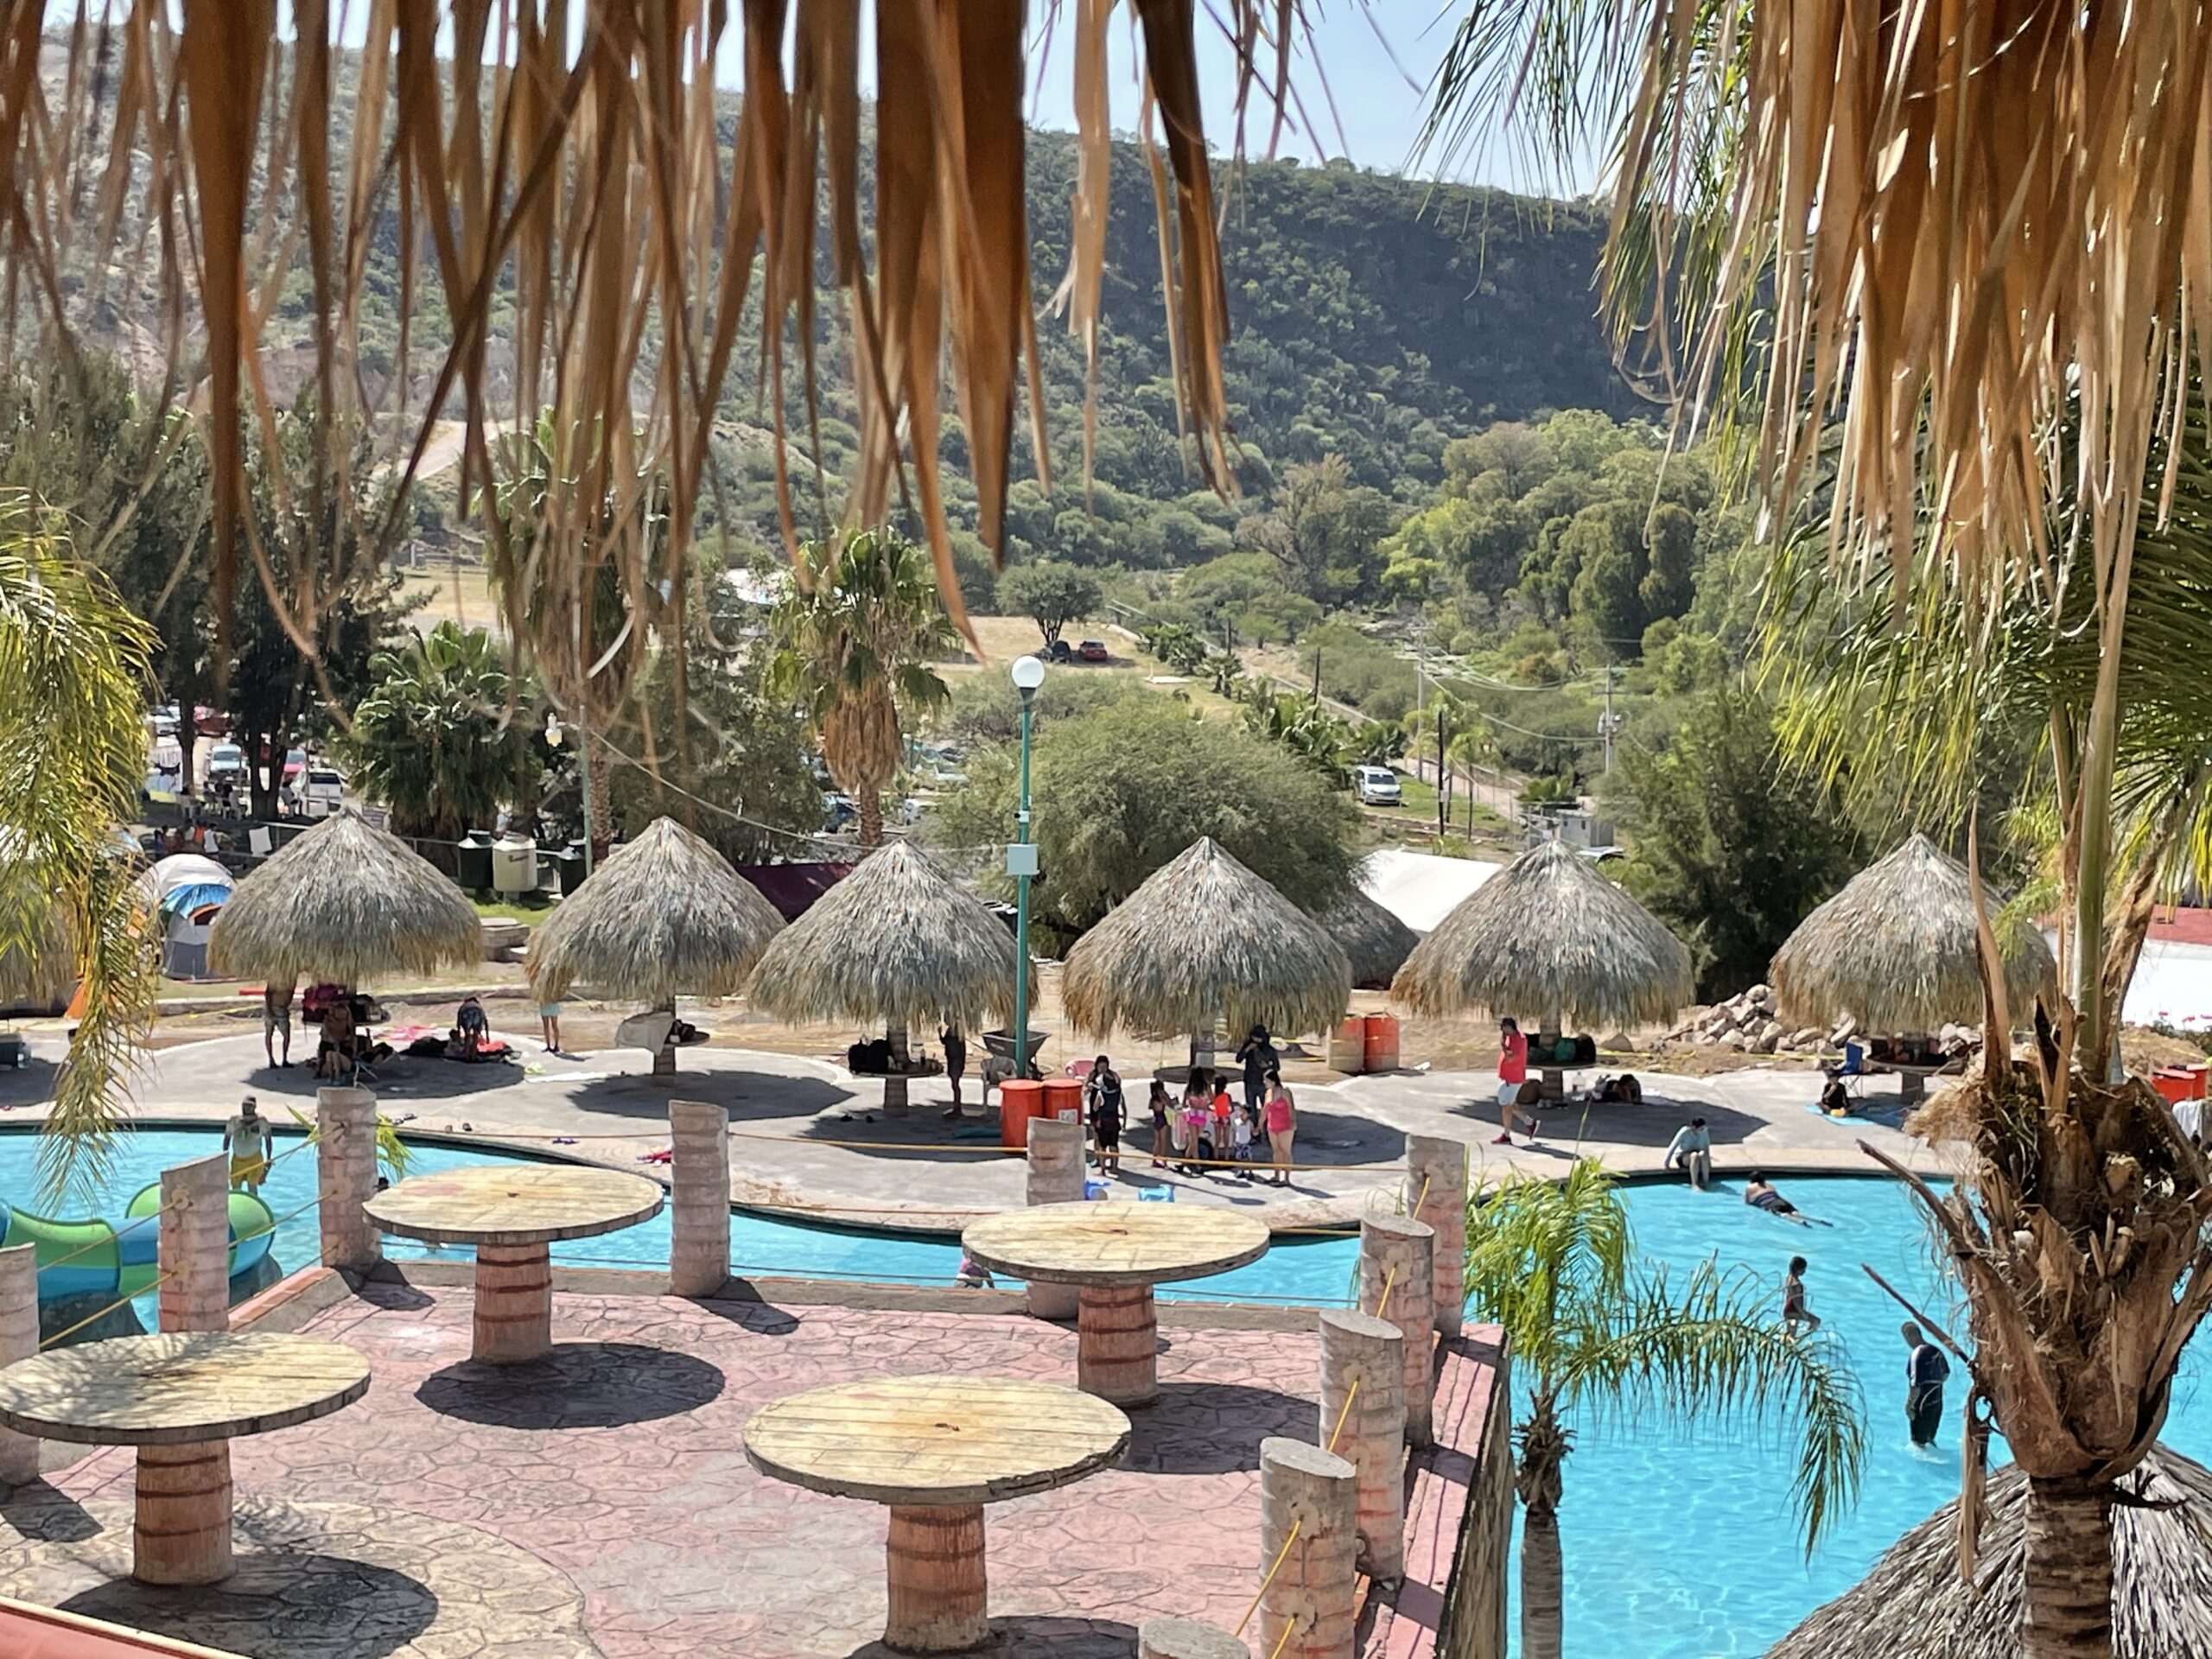 El Geiser hot springs pool near Tequis. @Diane Gierisch